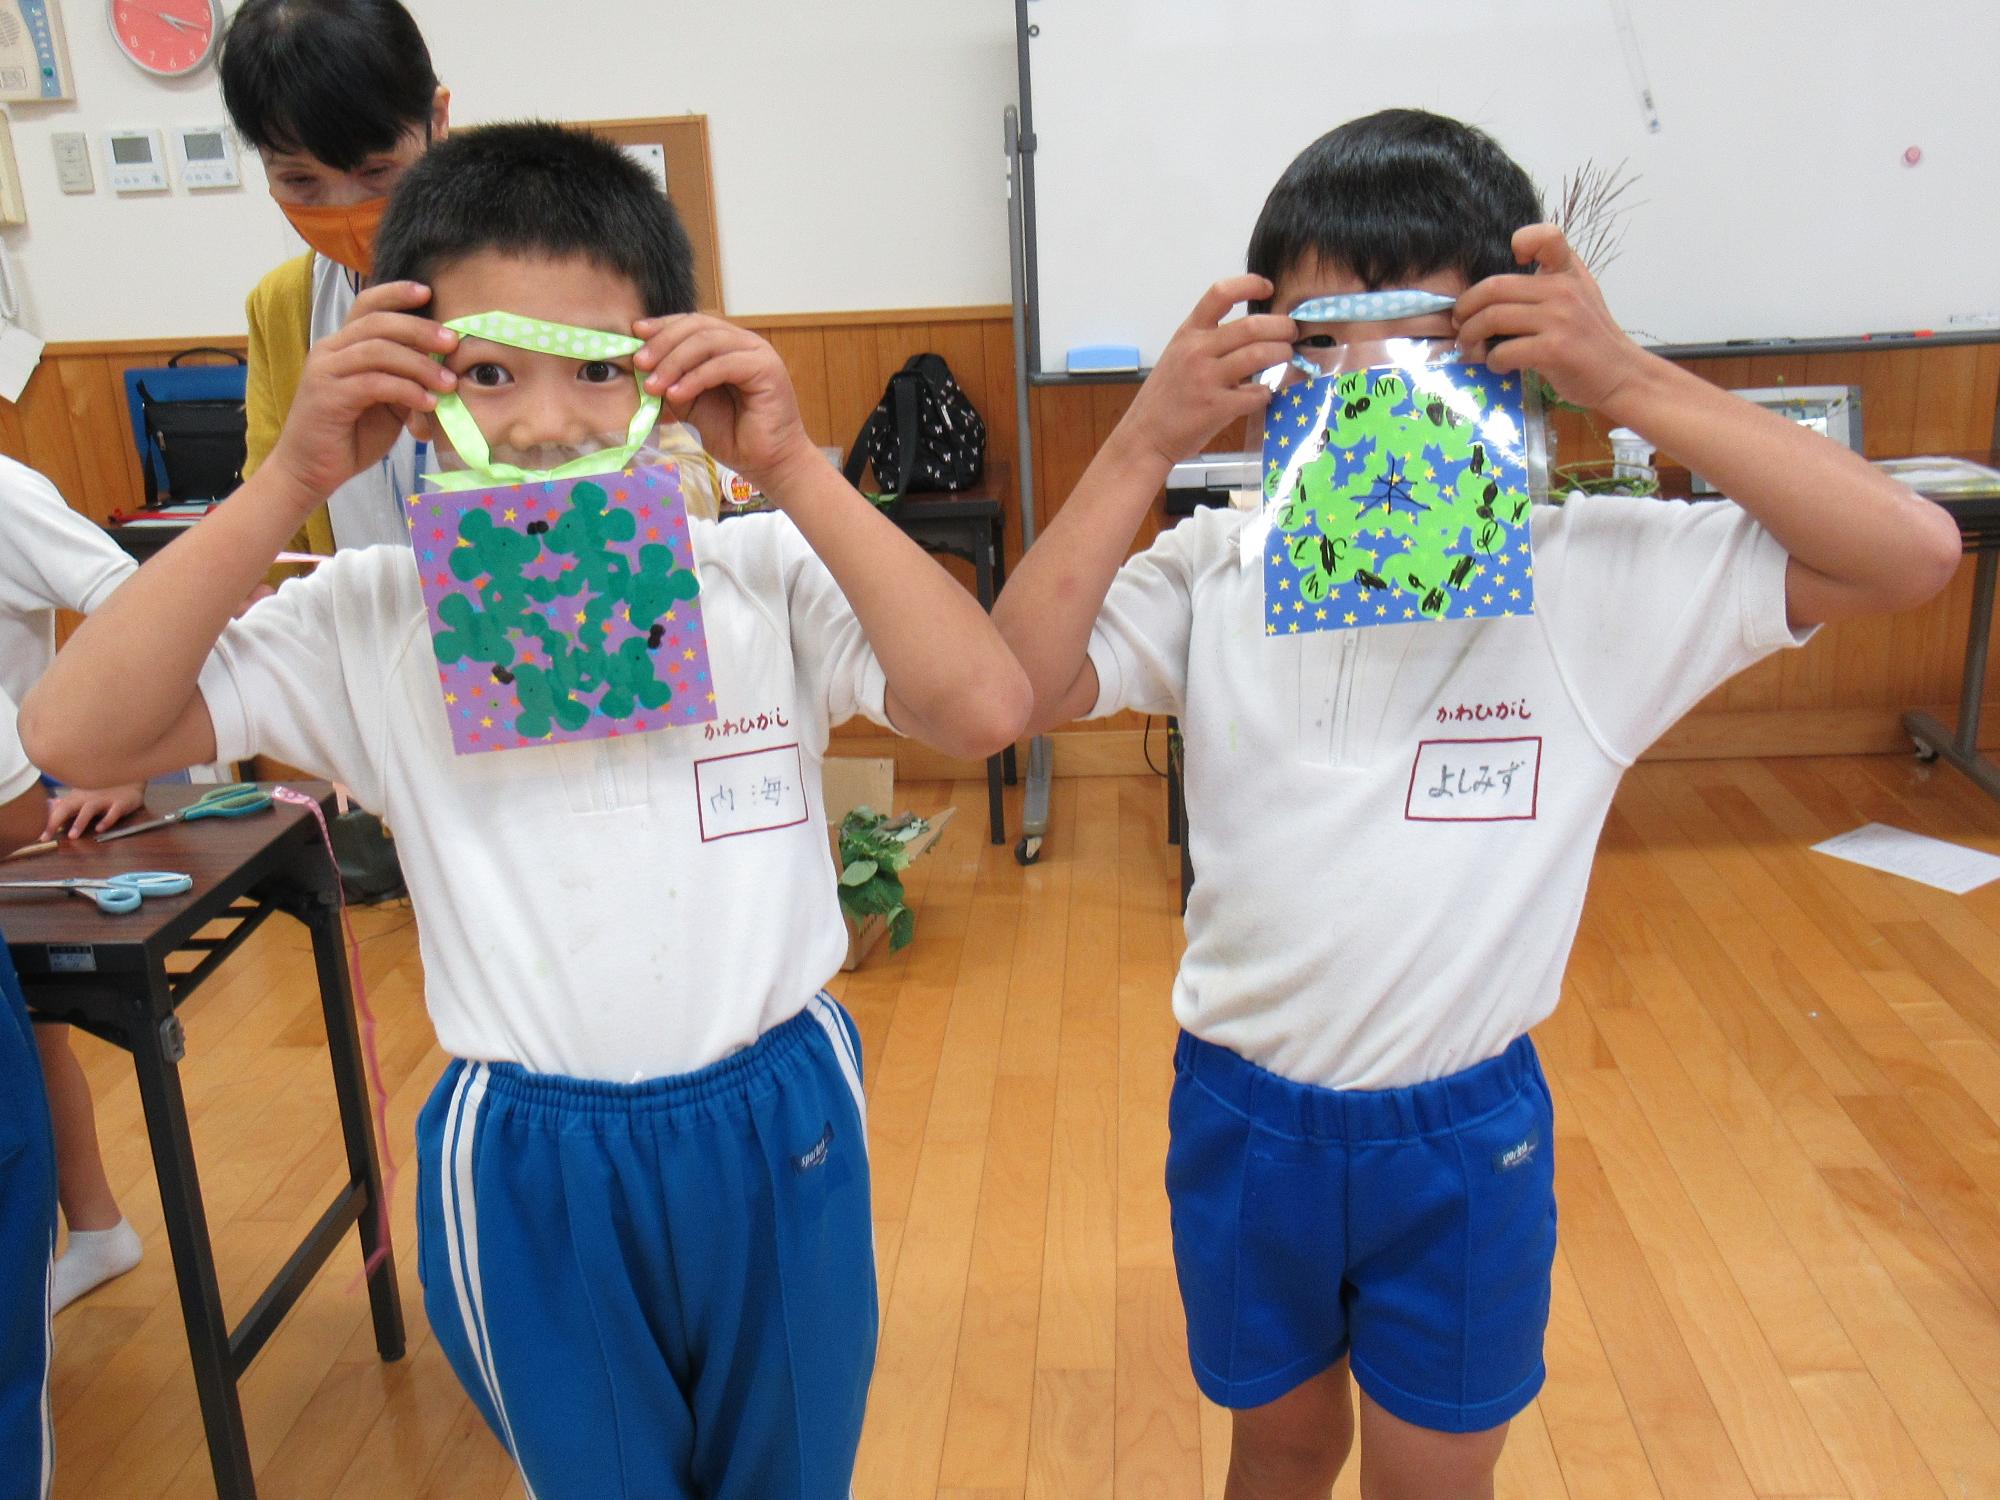 放課後子ども教室で作ったかべ飾りをうれしそうに見せてくれる二人の子どもの写真